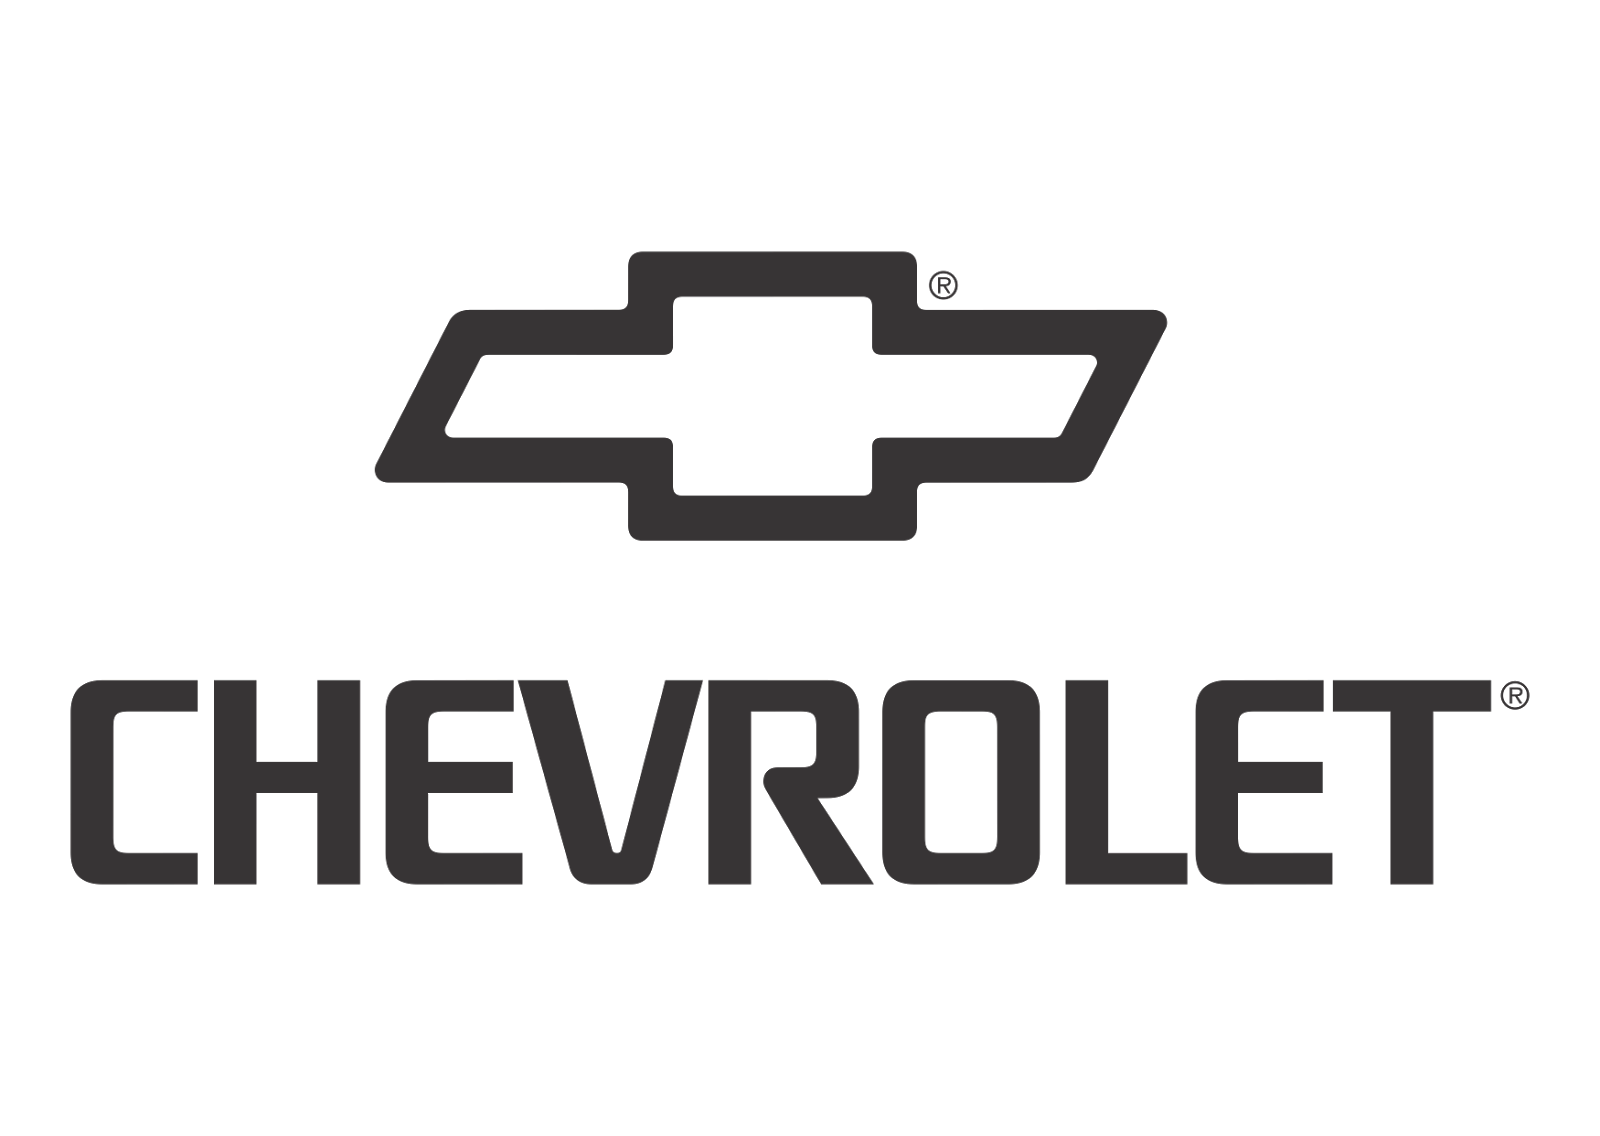 Chevrolet-logo-vector-(black-white).png